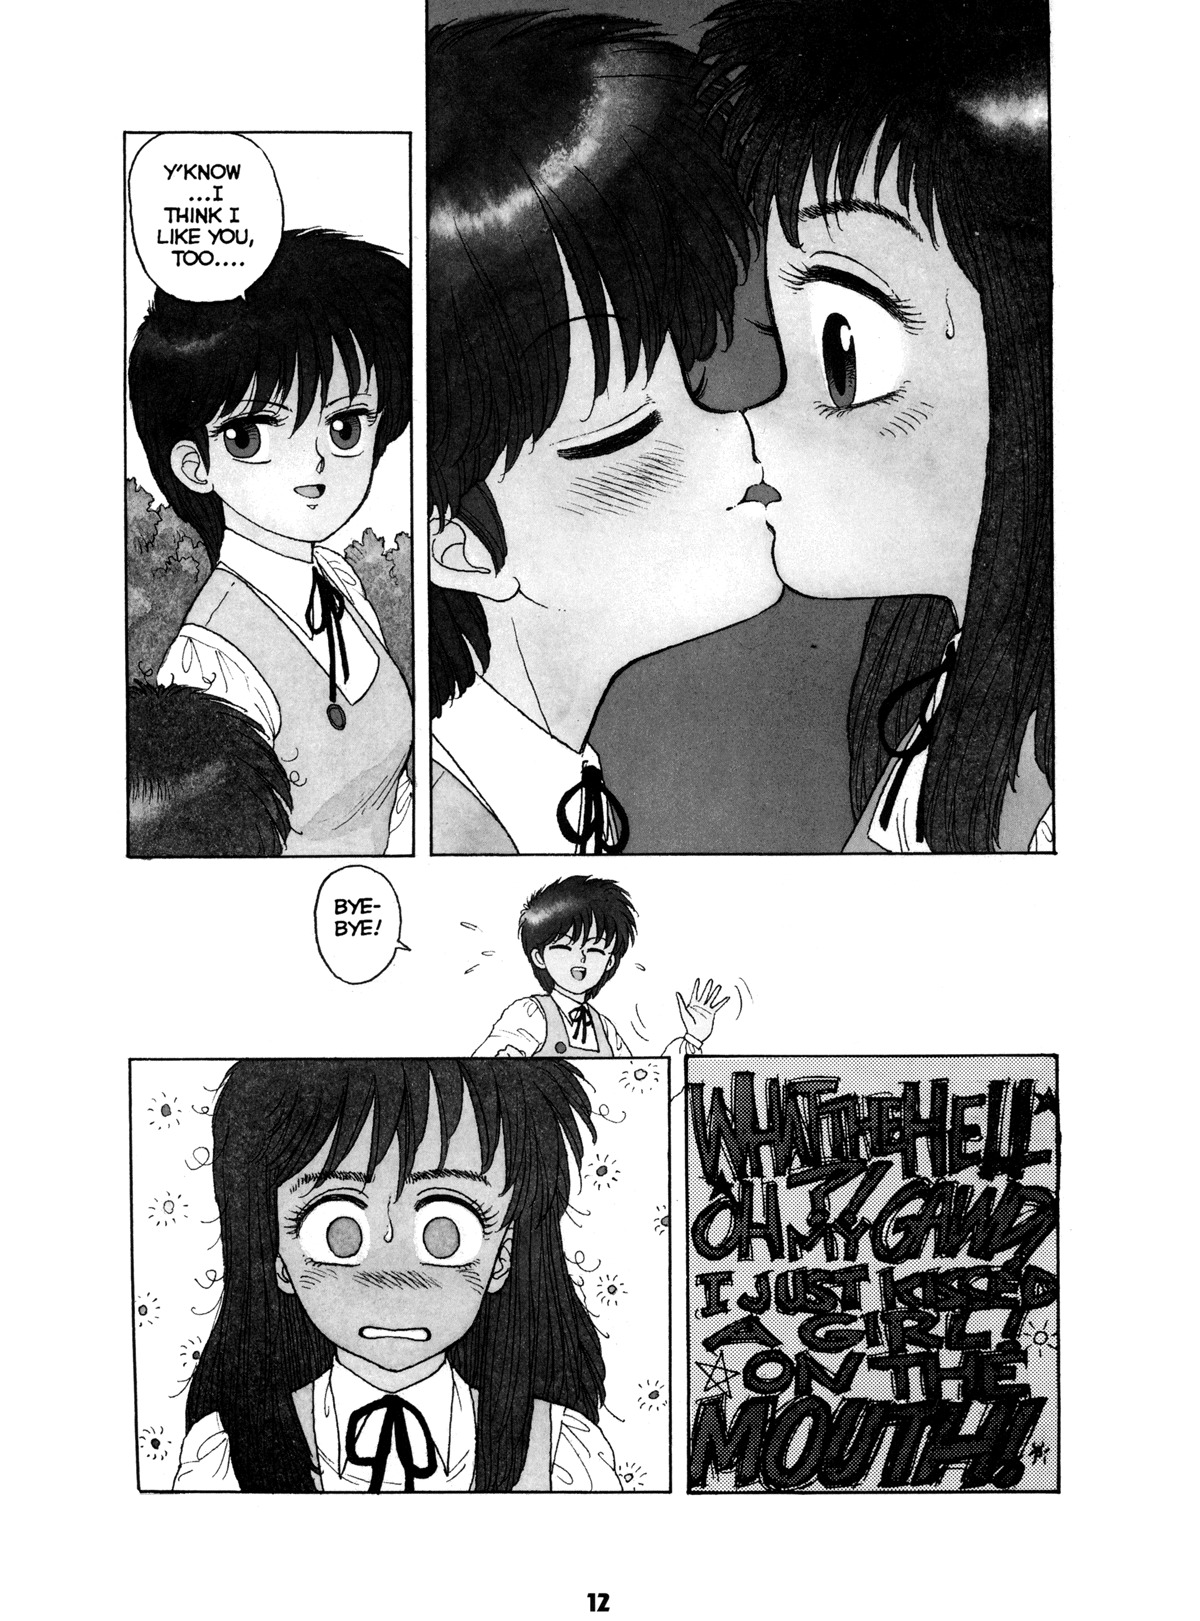 Misty Girl Extreme 11 hentai manga